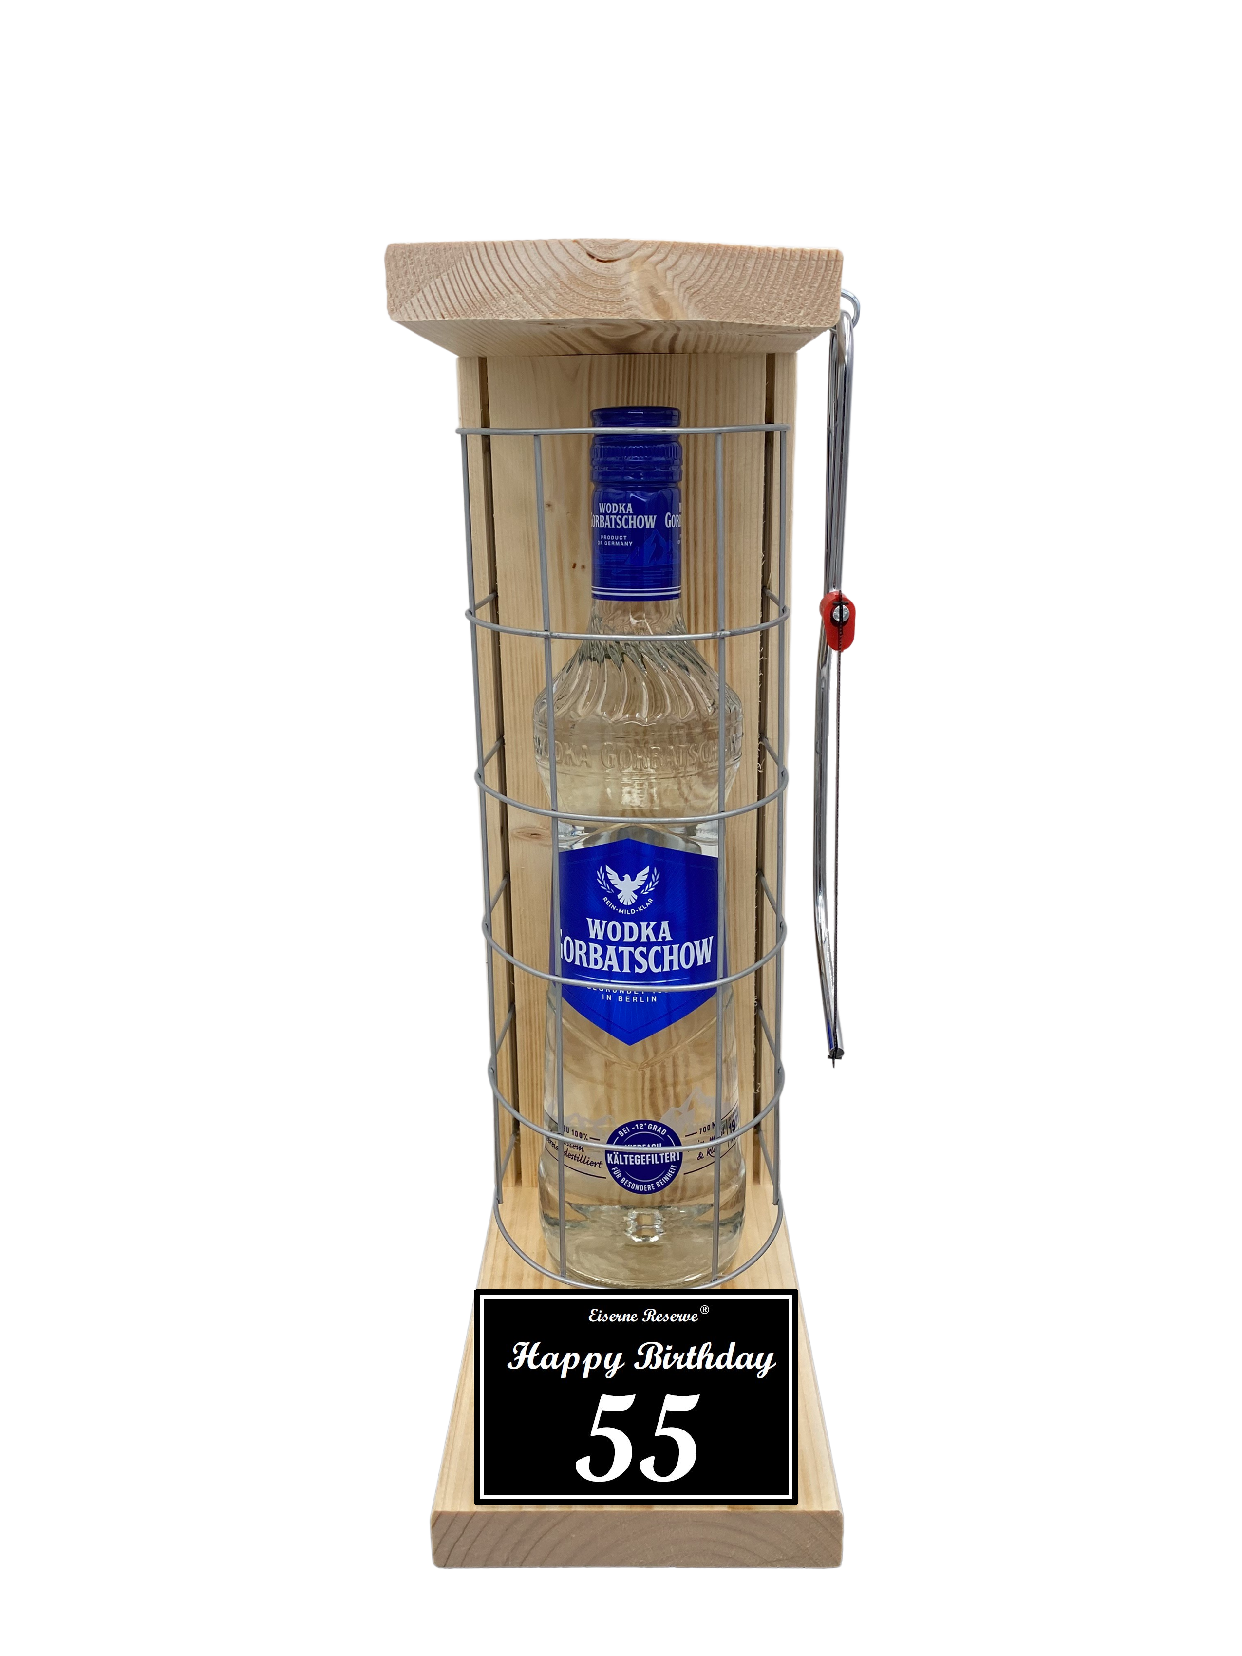 Wodka Geschenk zum 55 Geburtstag - Eiserne Reserve Gitterkäfig